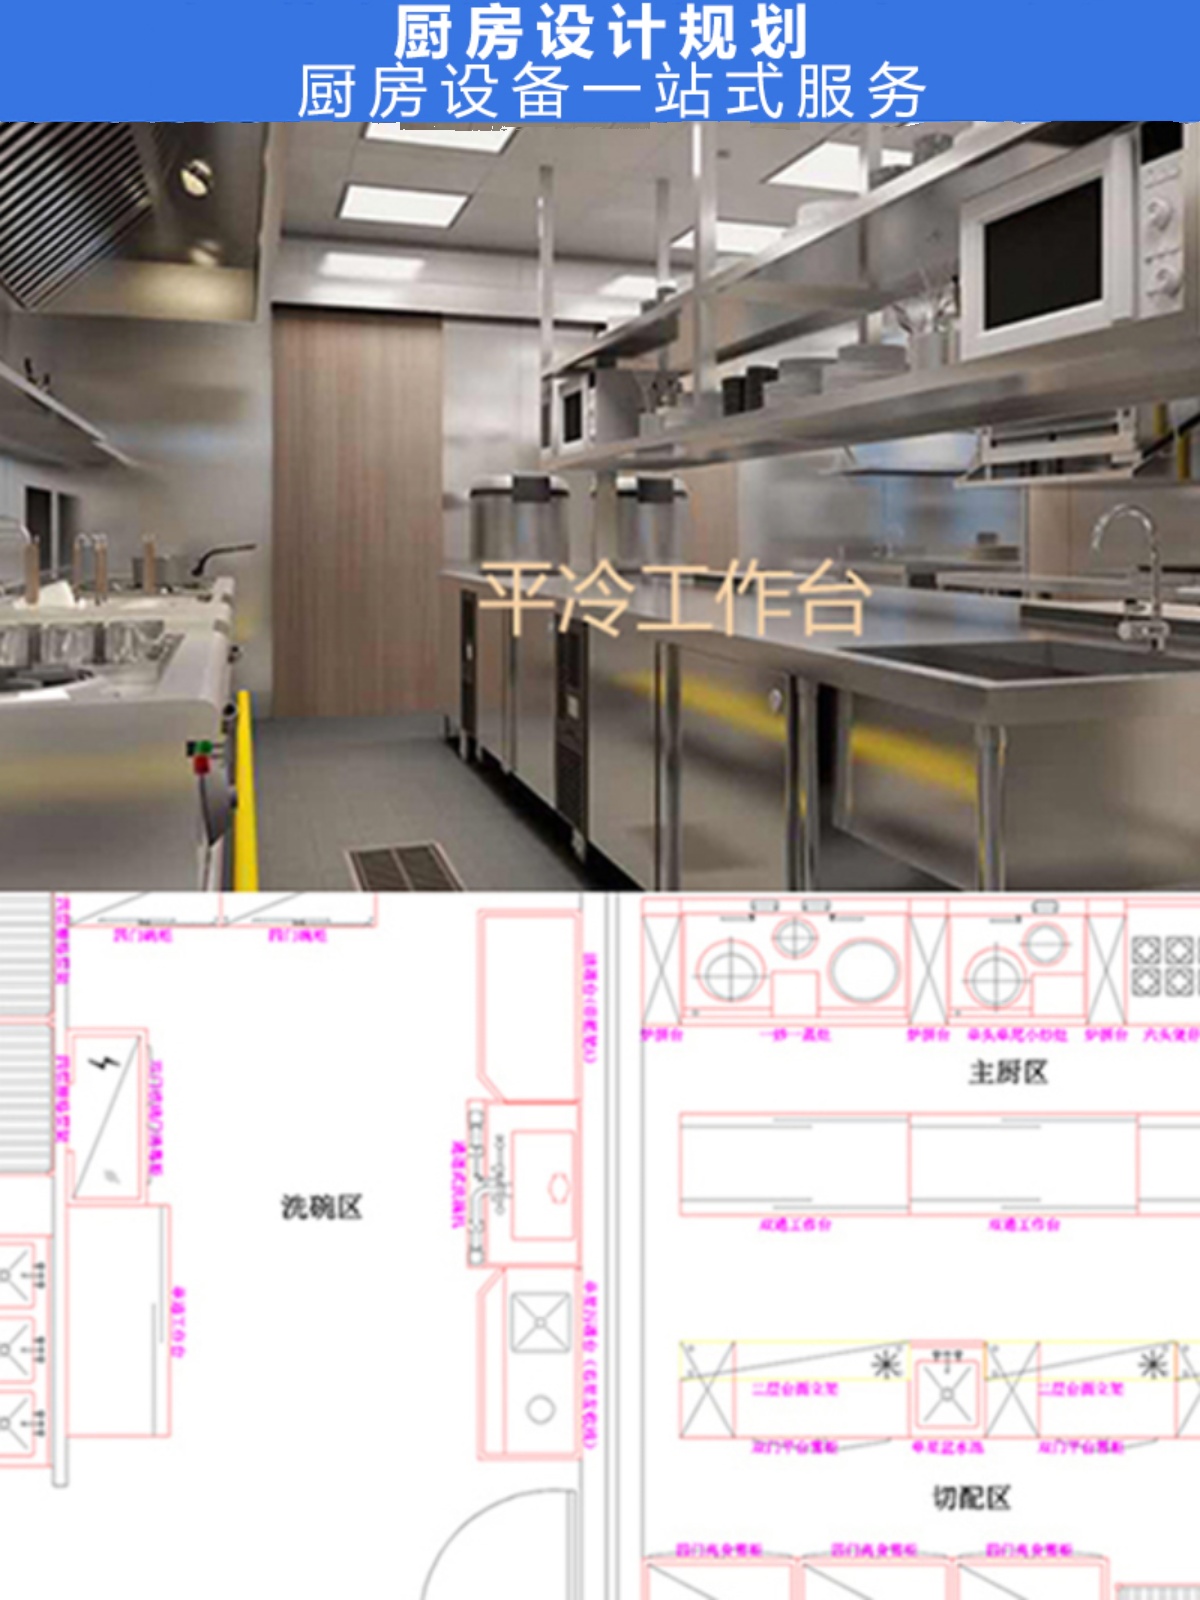 商用厨房酒店食堂餐厅厨房设备商用工程设计施工方案设备CAD配套